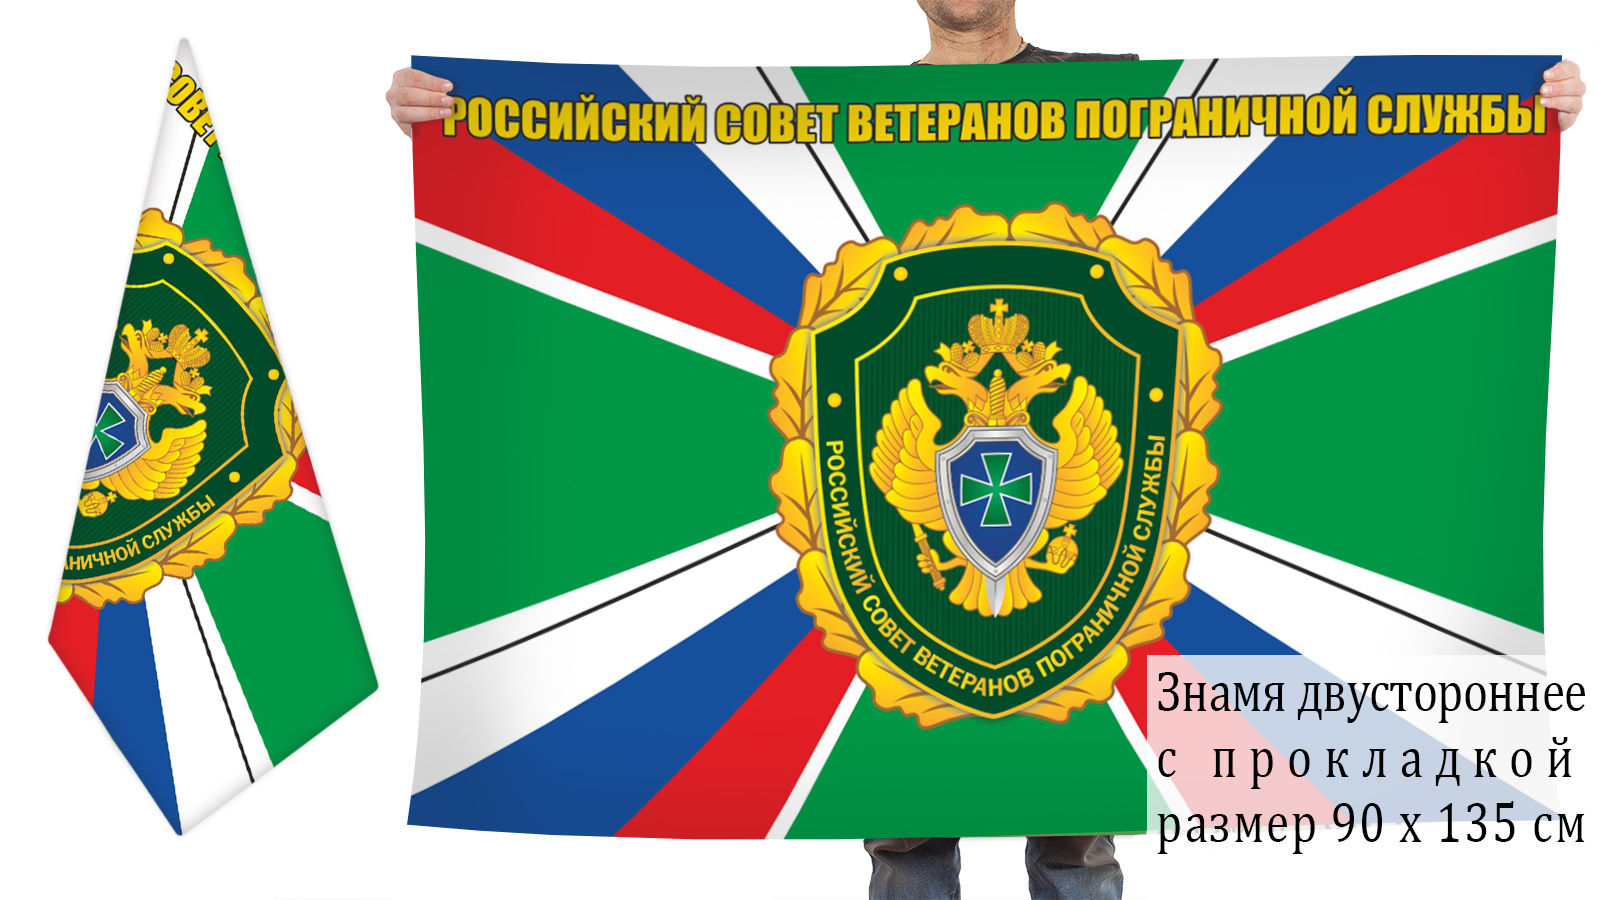 Заказать флаг Российского совета ветеранов Пограничной службы